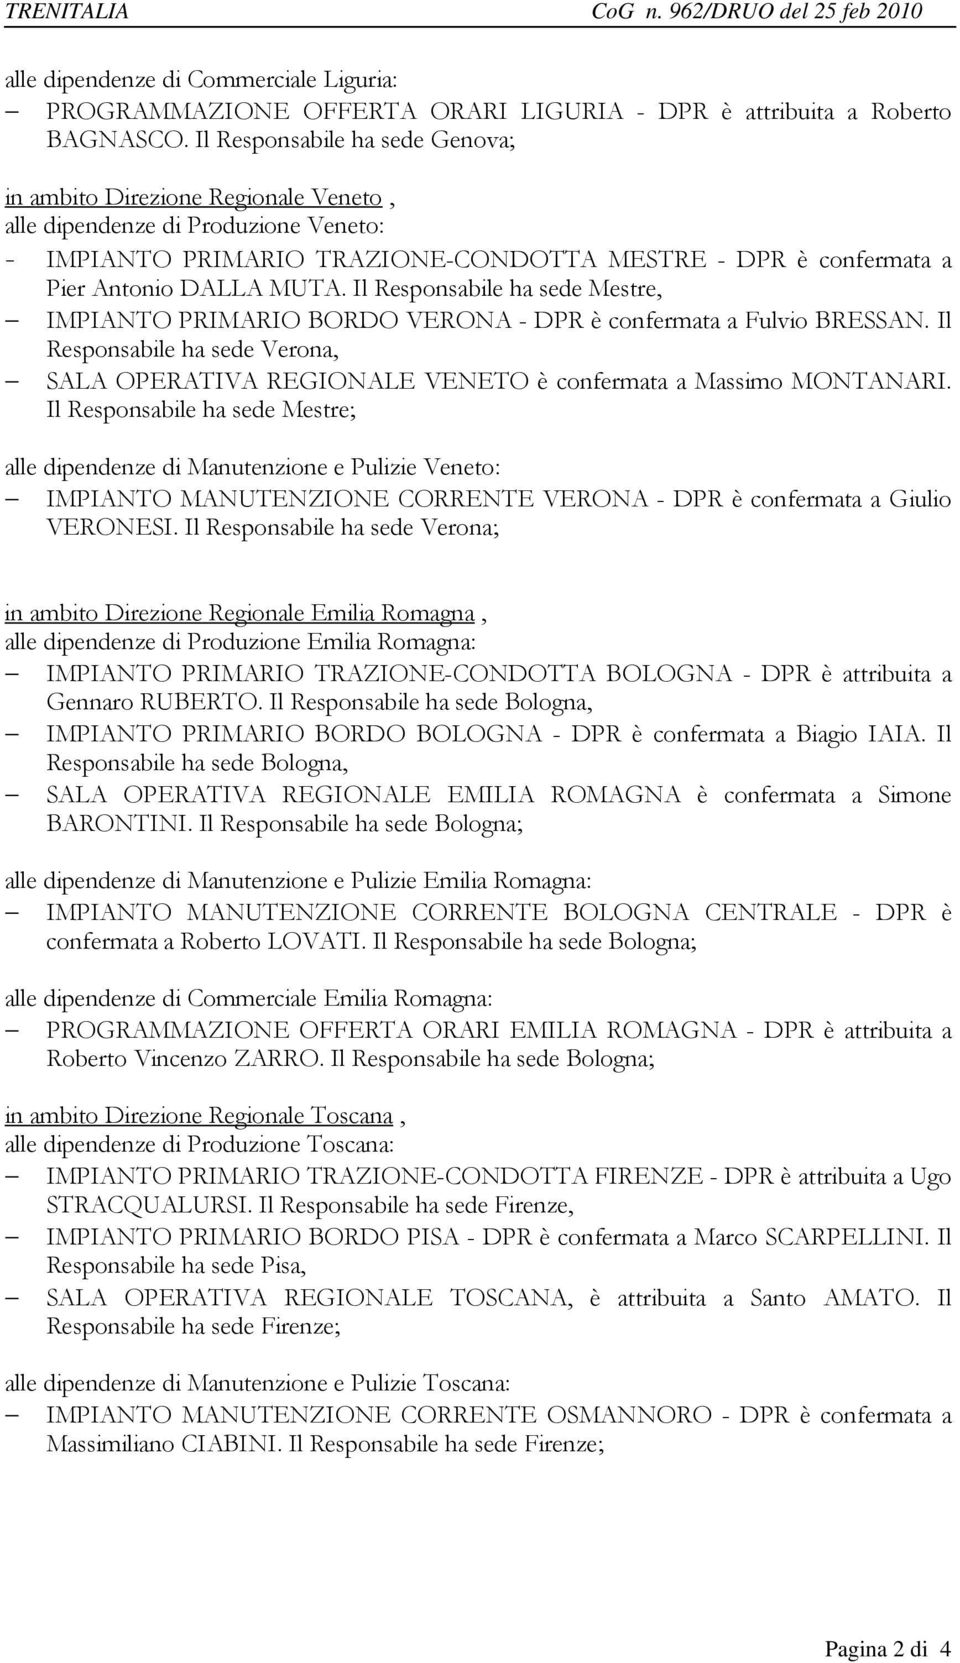 Il Responsabile ha sede Mestre, IMPIANTO PRIMARIO BORDO VERONA - DPR è confermata a Fulvio BRESSAN. Il Responsabile ha sede Verona, SALA OPERATIVA REGIONALE VENETO è confermata a Massimo MONTANARI.